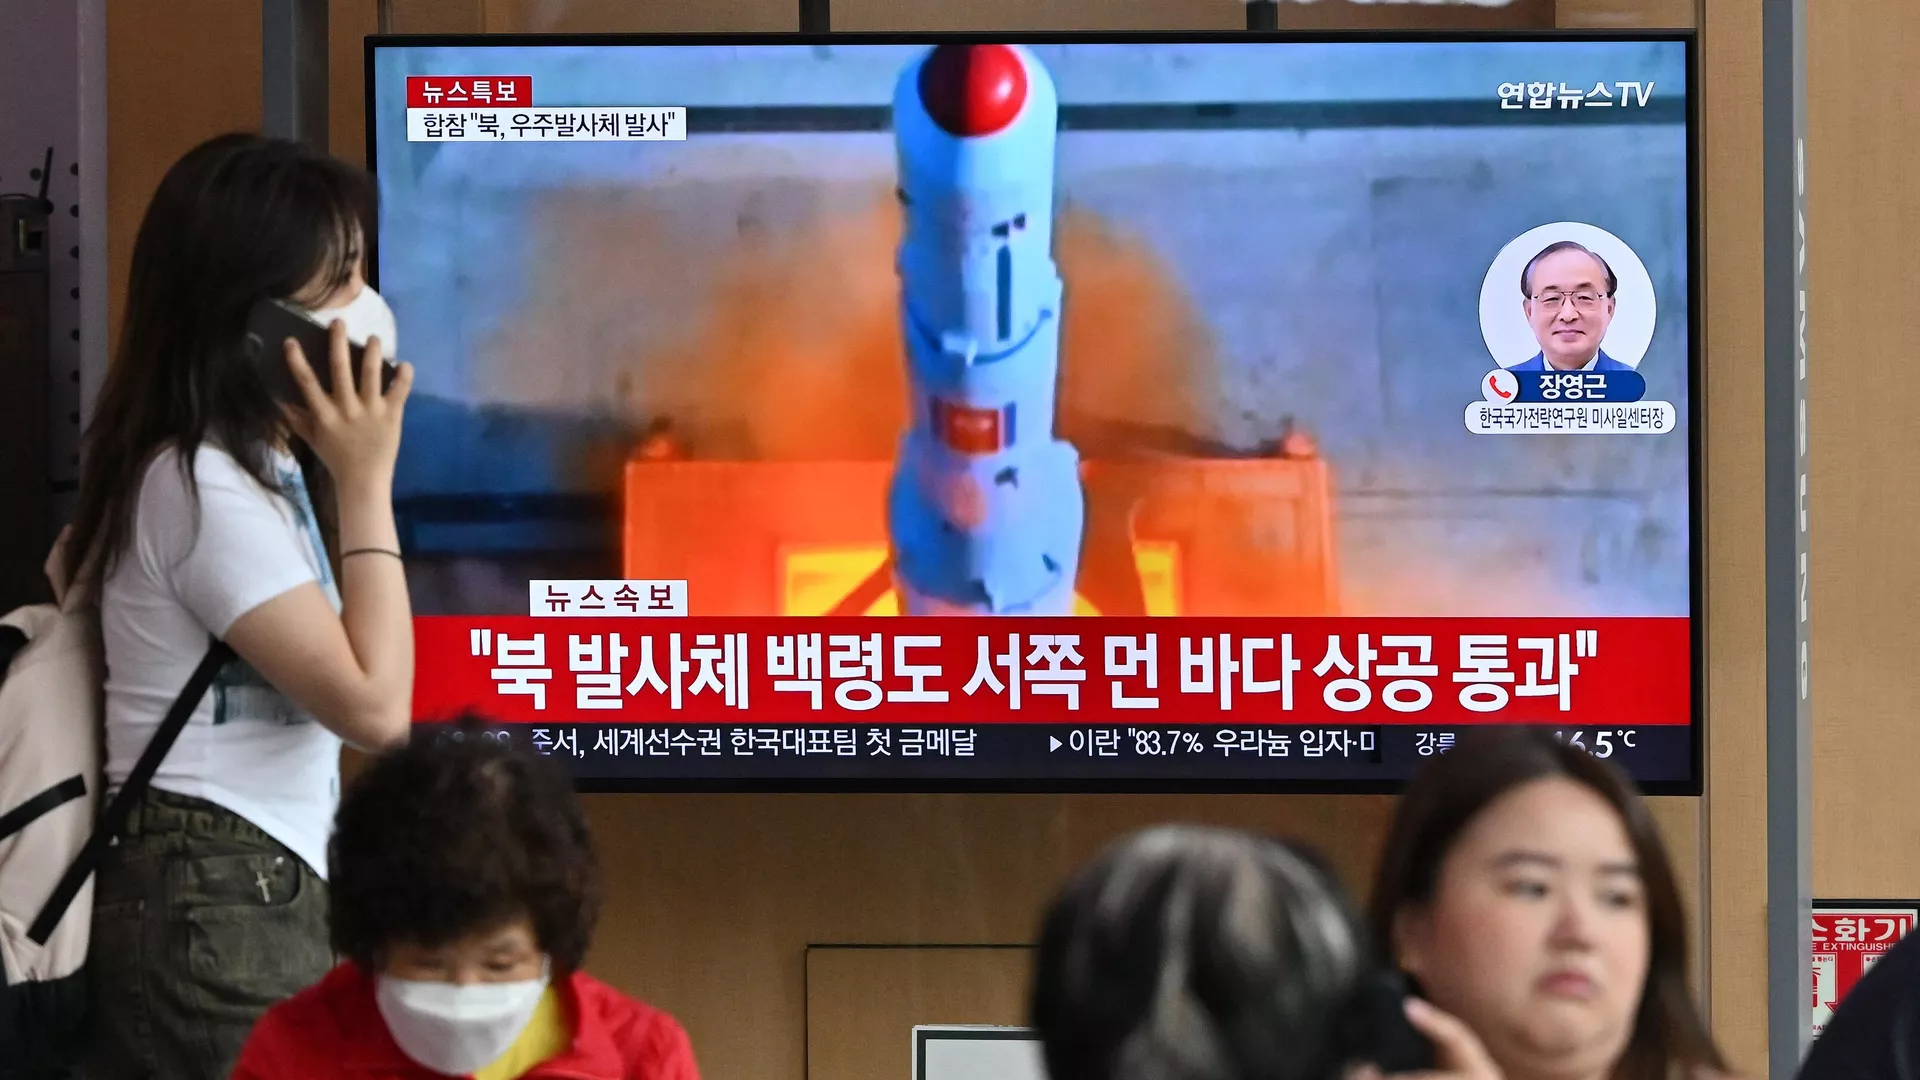 كوريا الشمالية تطلق صاروخا باليستيا باتجاه بحر اليابان - نيوز بالعربى